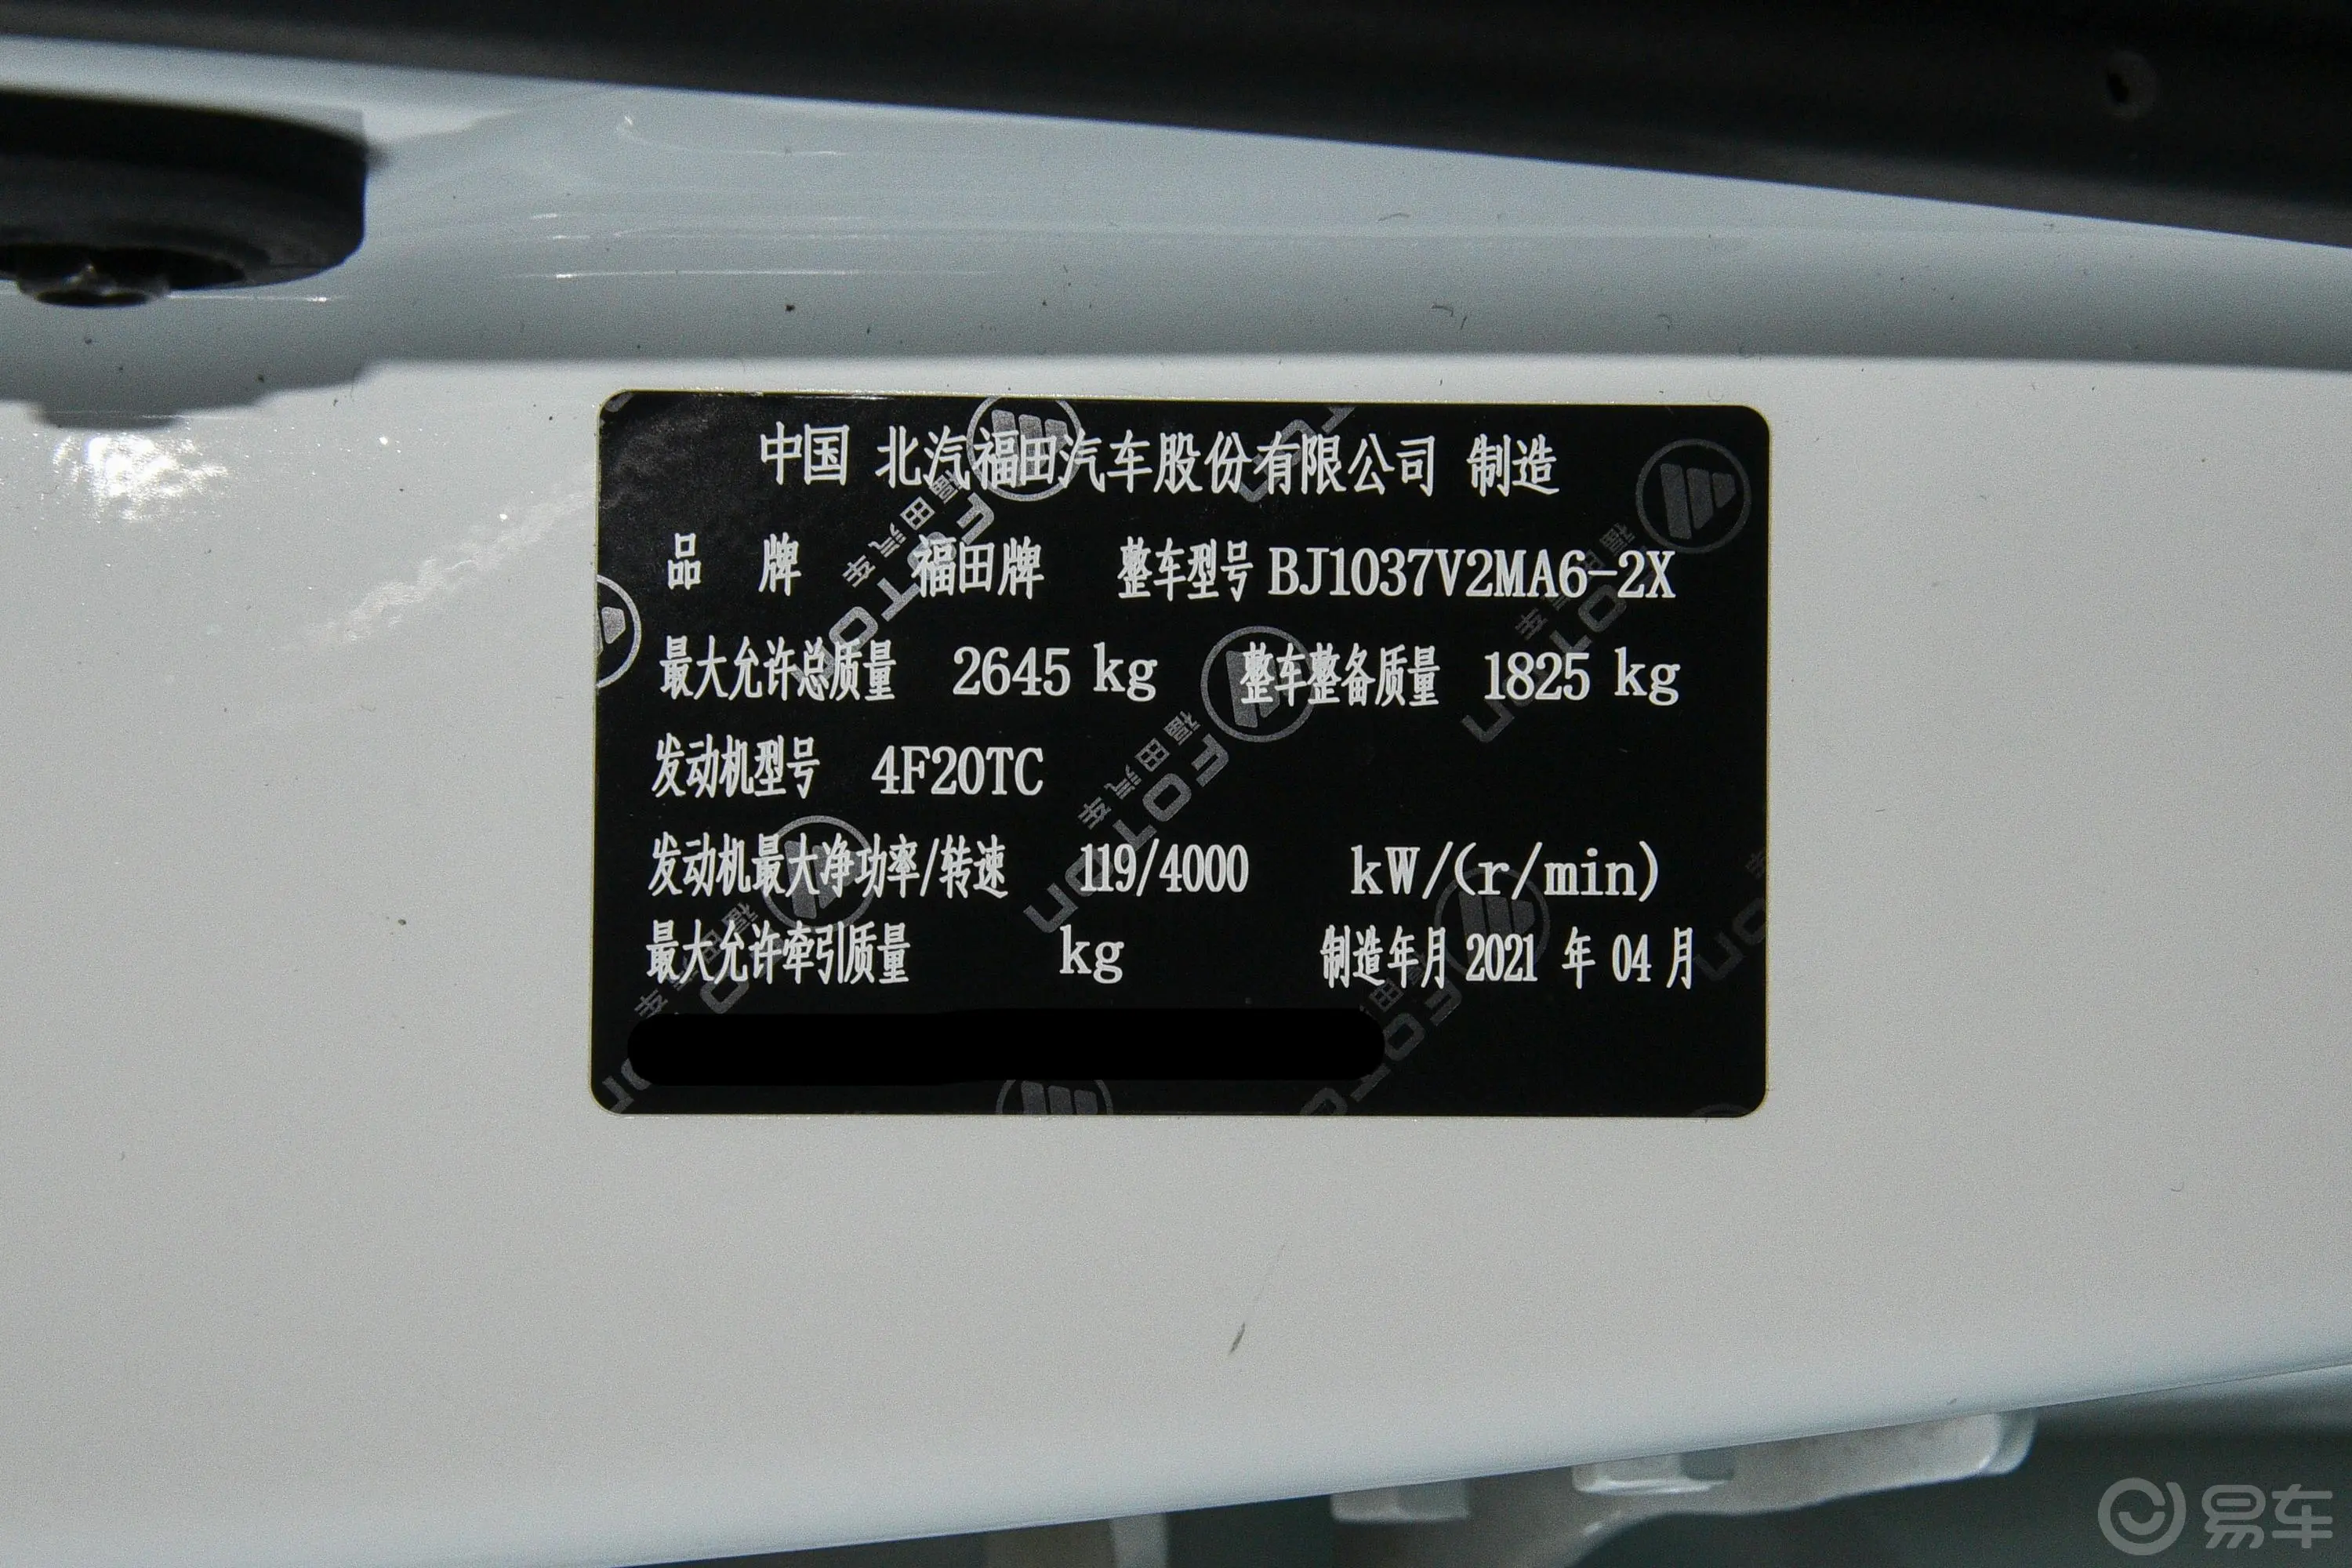 福田征服者32.0T 手动 两驱 标轴低货台 电商型 柴油车辆信息铭牌